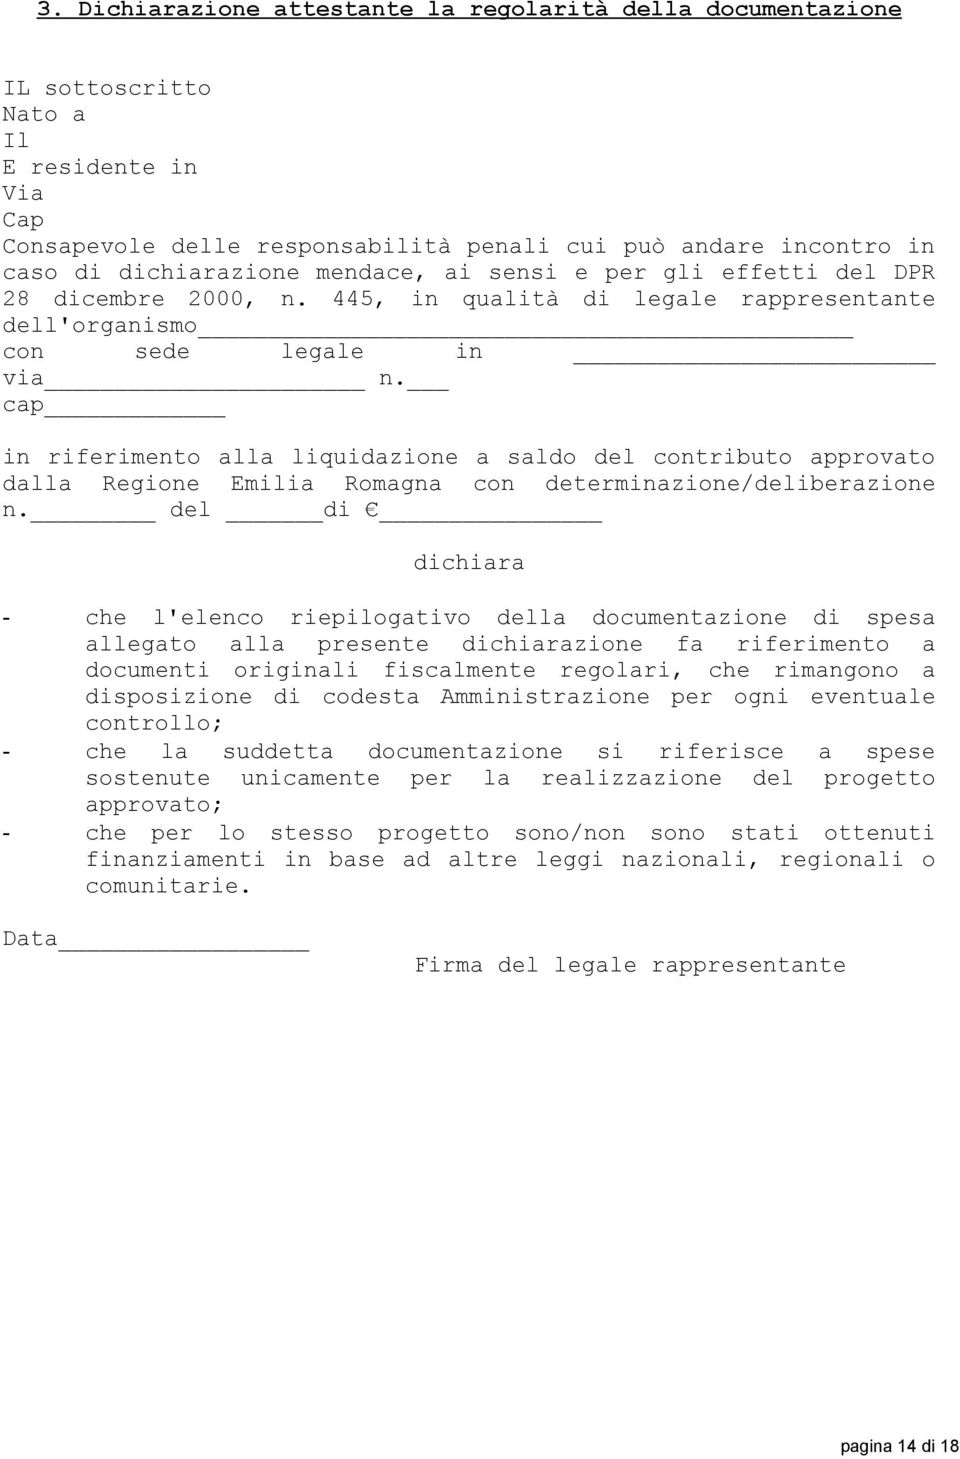 cap in riferimento alla liquidazione a saldo del contributo approvato dalla Regione Emilia Romagna con determinazione/deliberazione n.